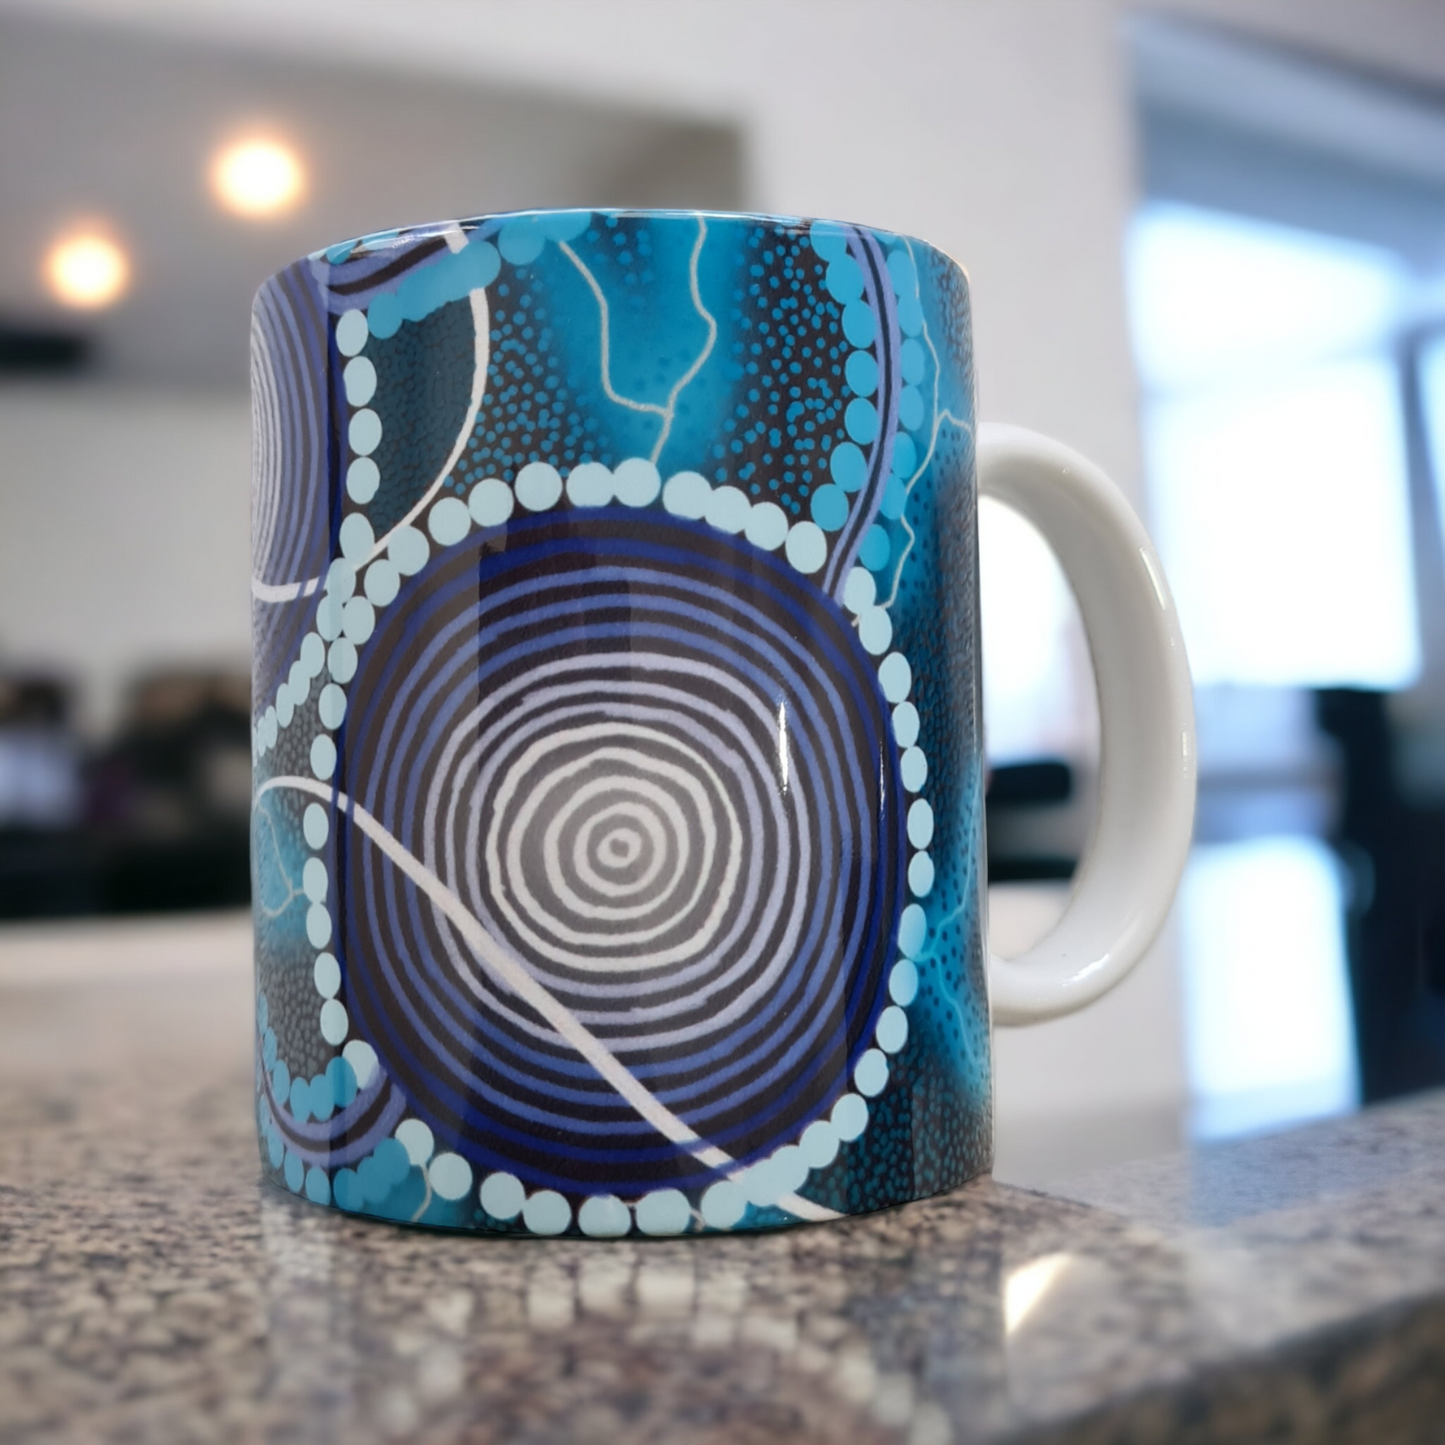 Ceramic mug - "MFA"